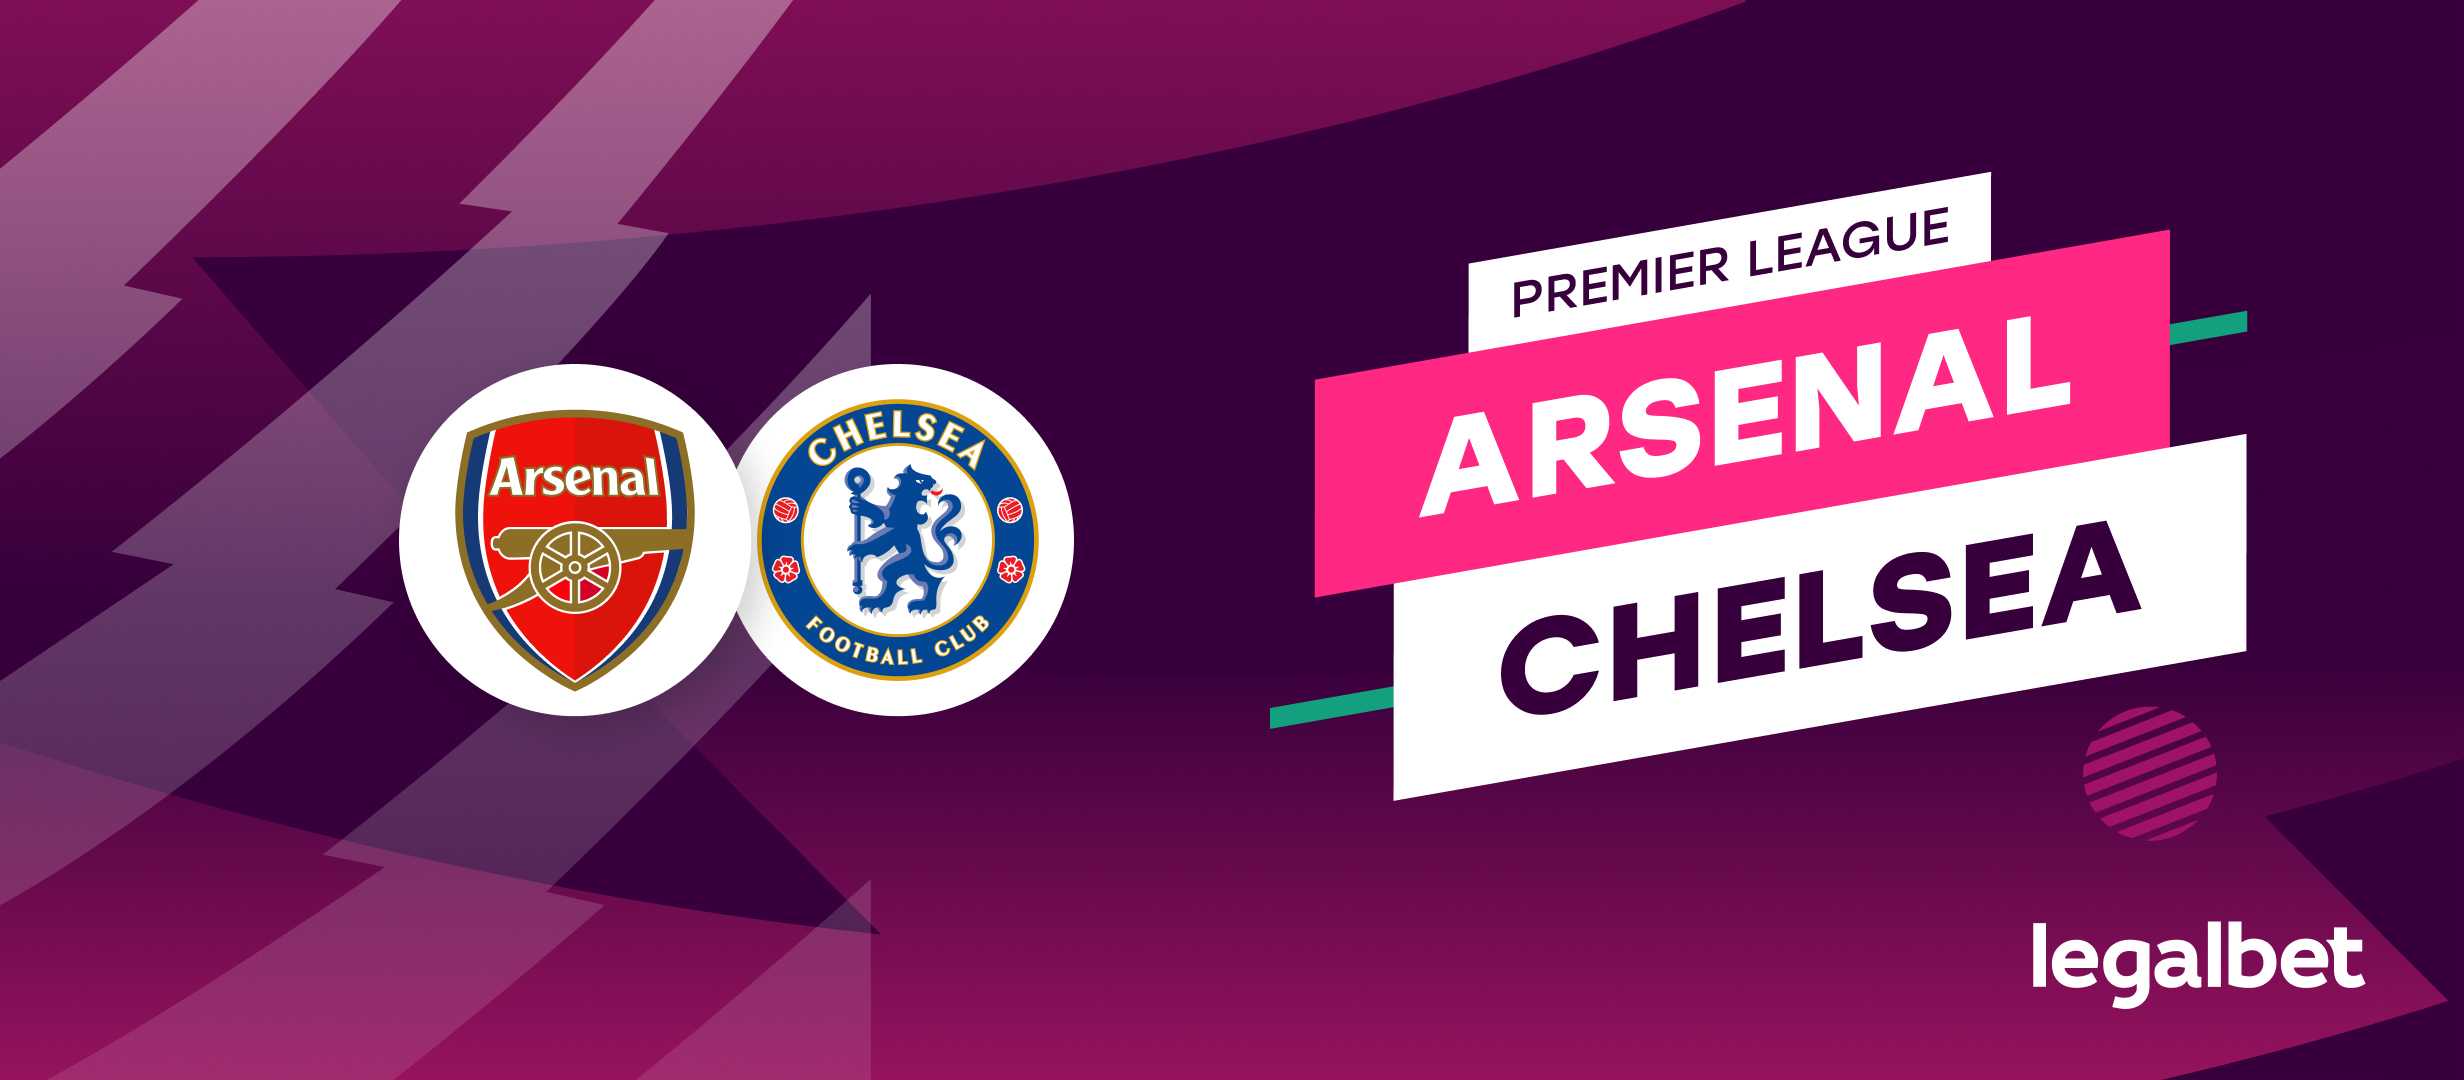 Arsenal - Chelsea, ponturi la pariuri Premier League